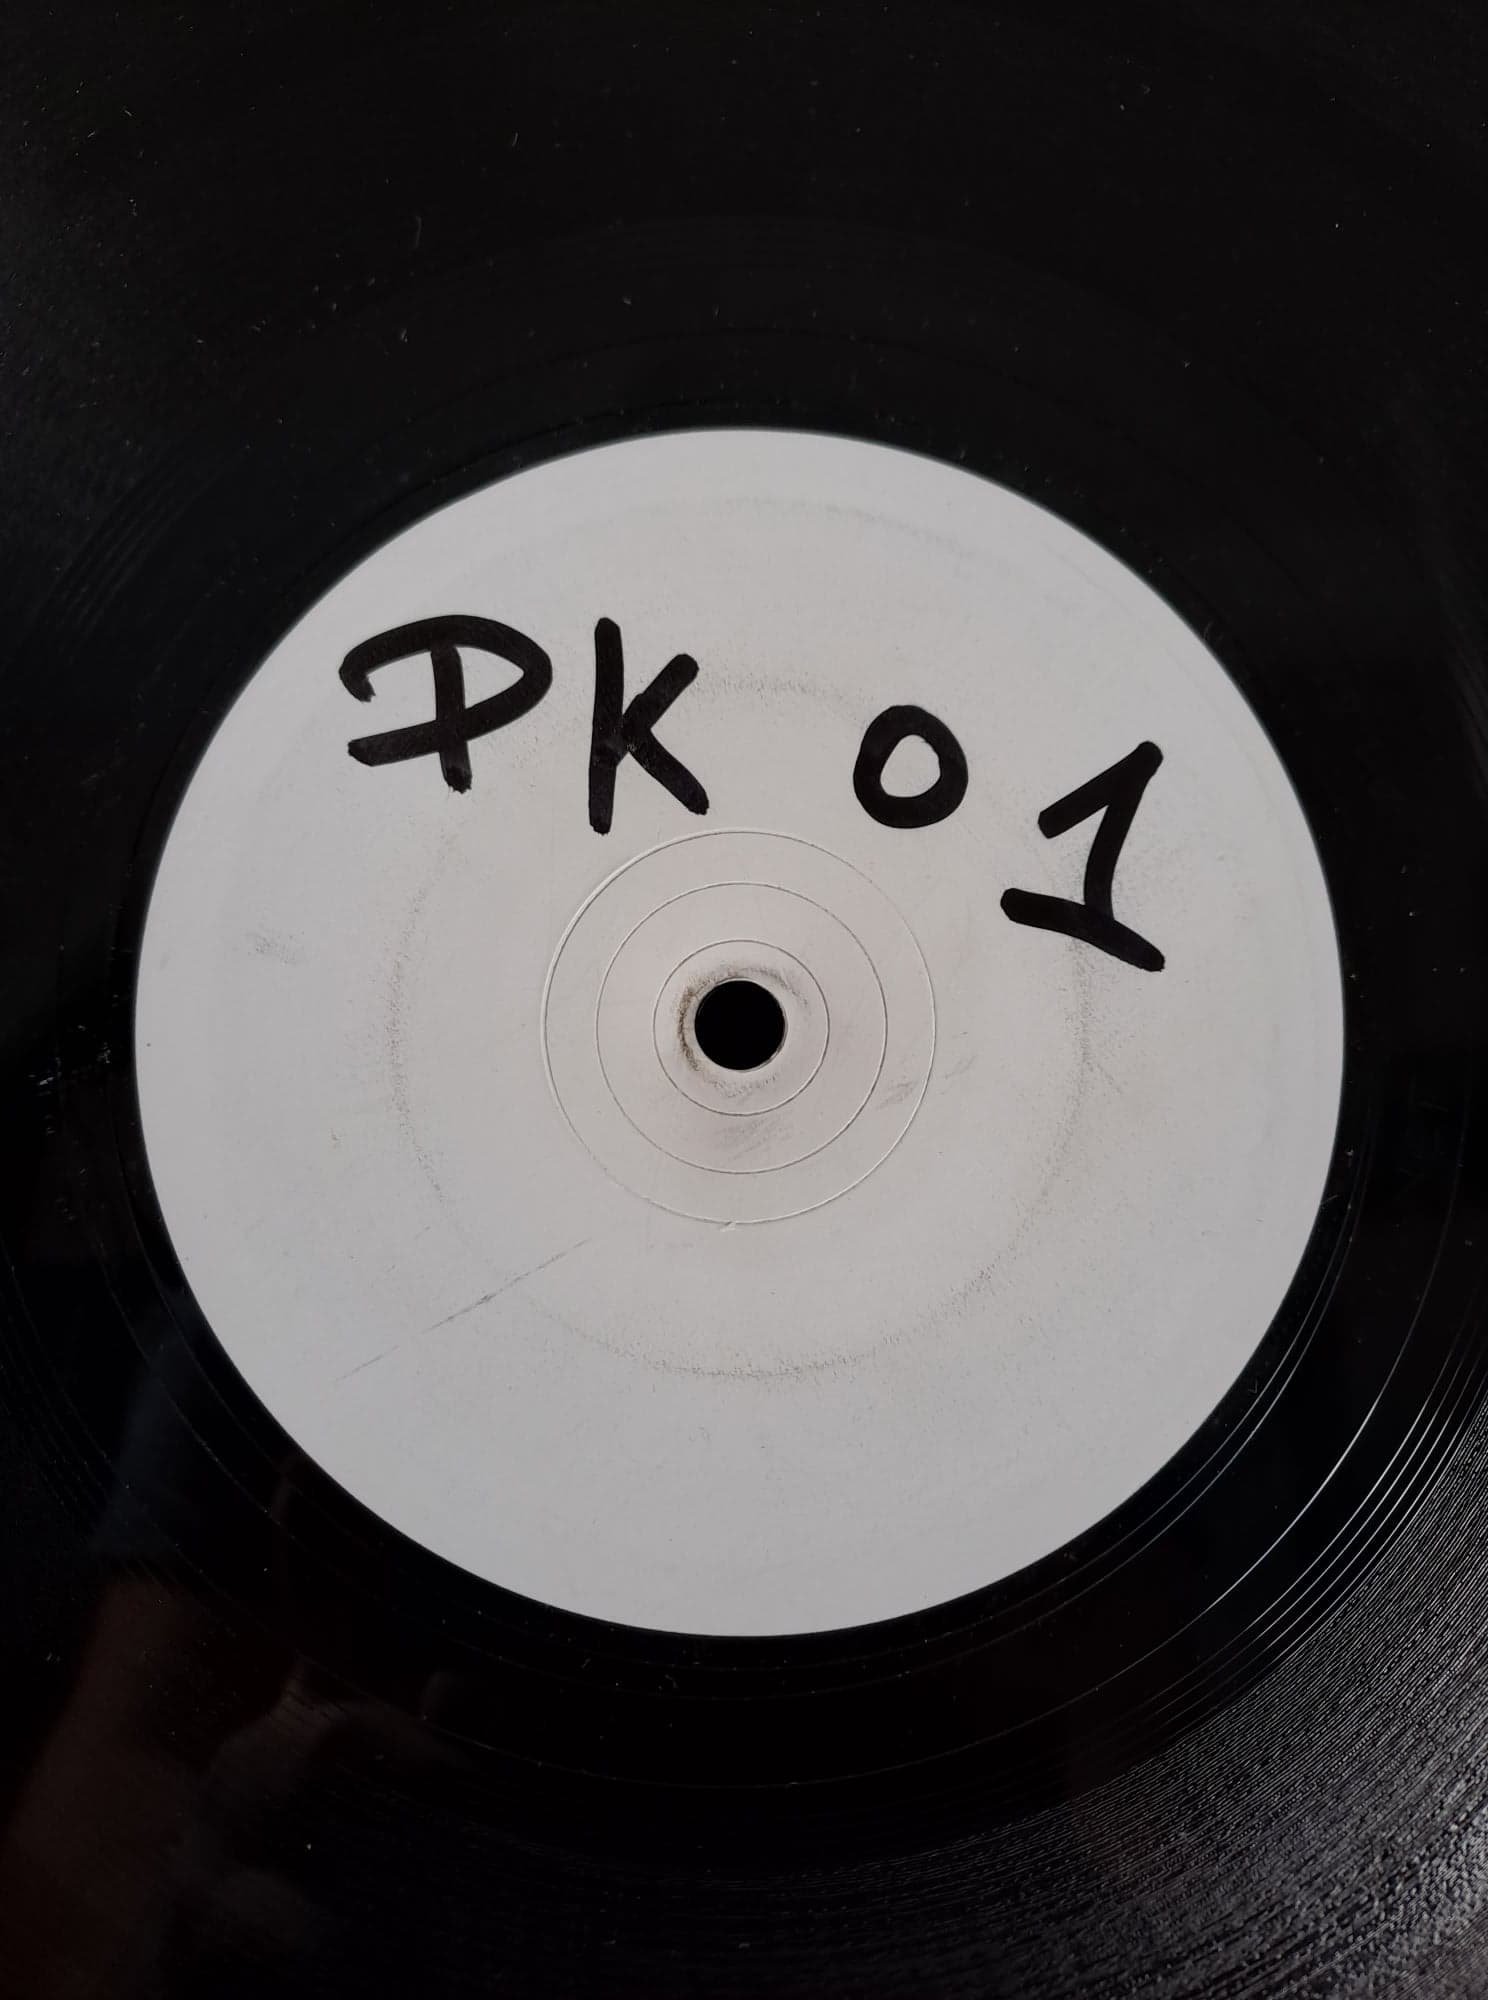 Planet Kick 01 (White Label) - vinyle freetekno